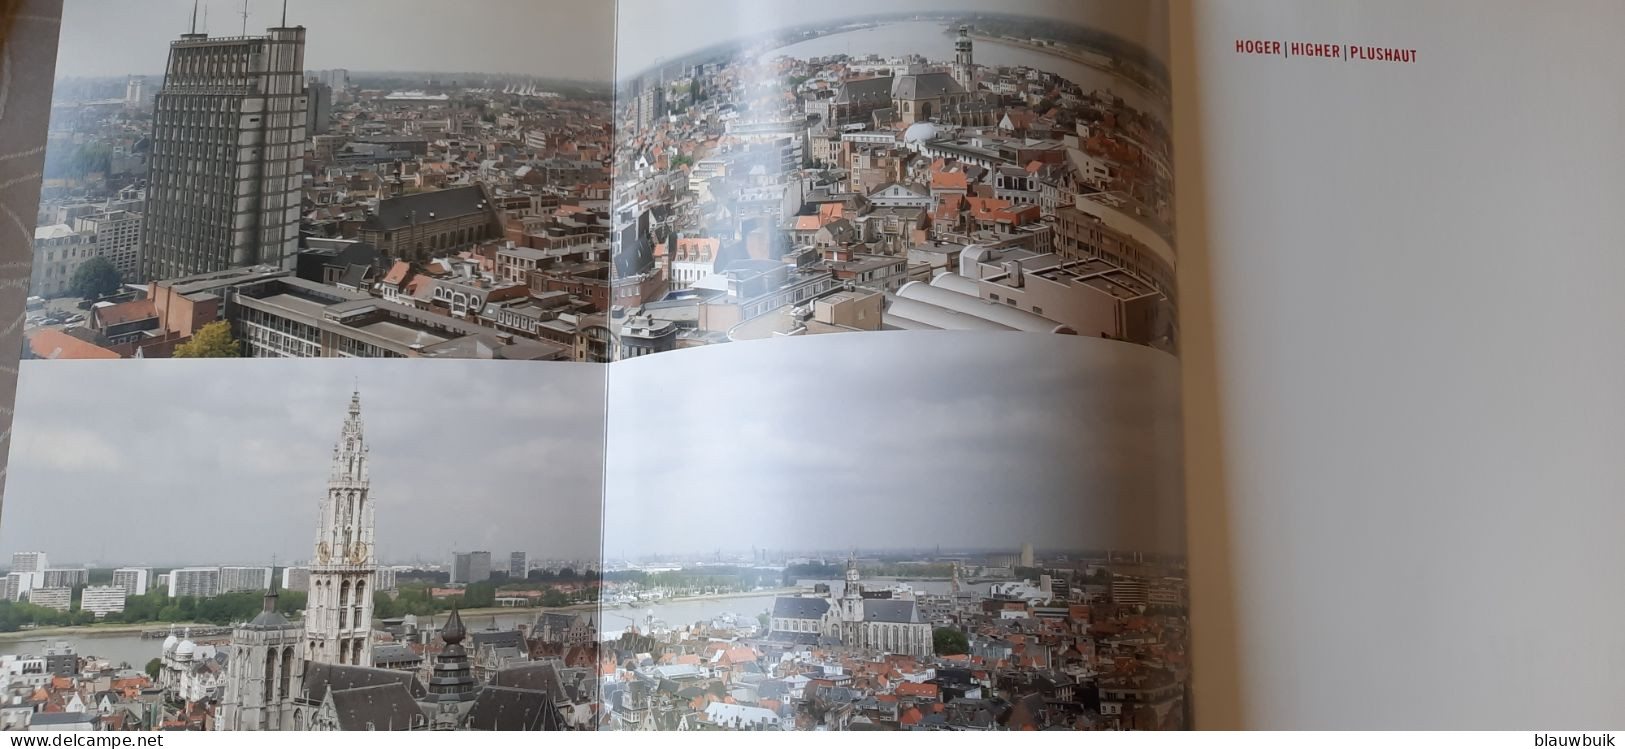 Panoramisch Antwerpen Hoger / Higher / Plus Haut - Prácticos